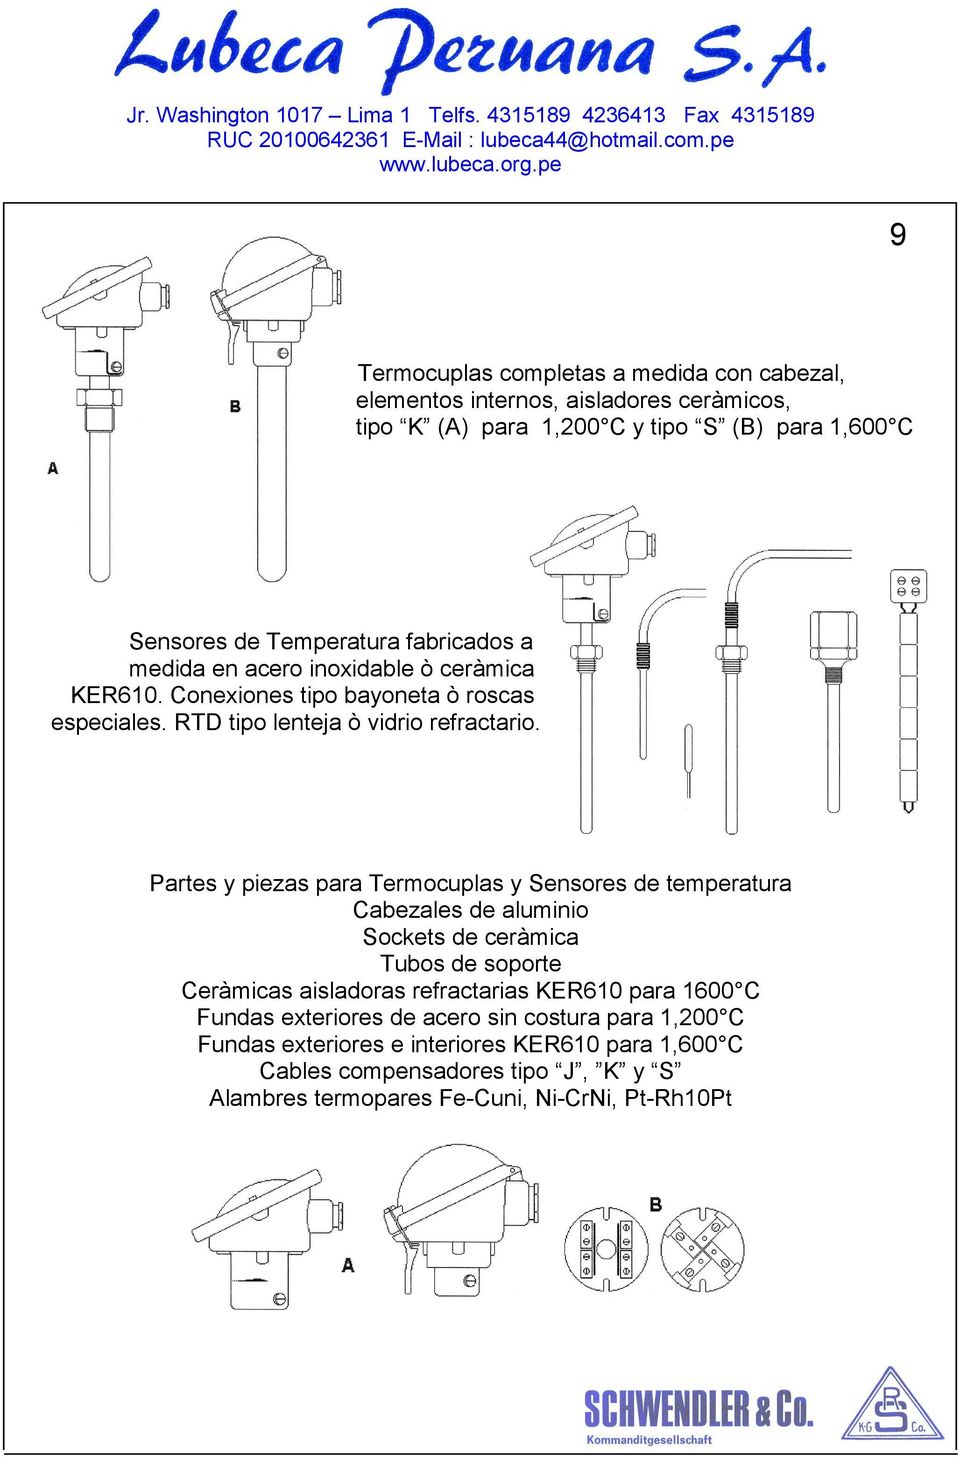 Partes y piezas para Termocuplas y Sensores de temperatura Cabezales de aluminio Sockets de ceràmica Tubos de soporte Ceràmicas aisladoras refractarias KER610 para